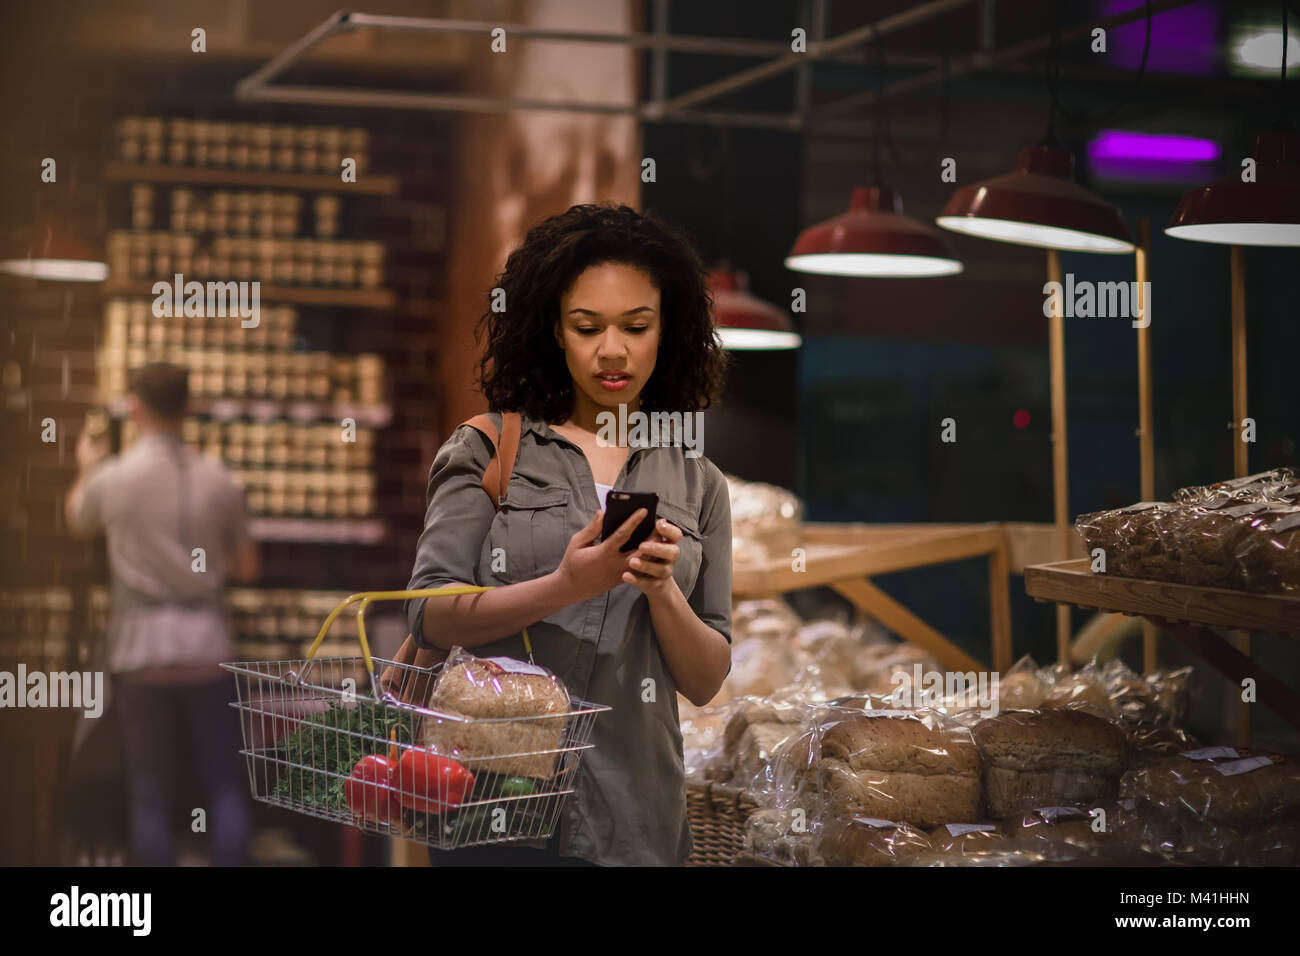 La donna a tarda notte negozi di alimentari e utilizza lo smartphone Foto Stock